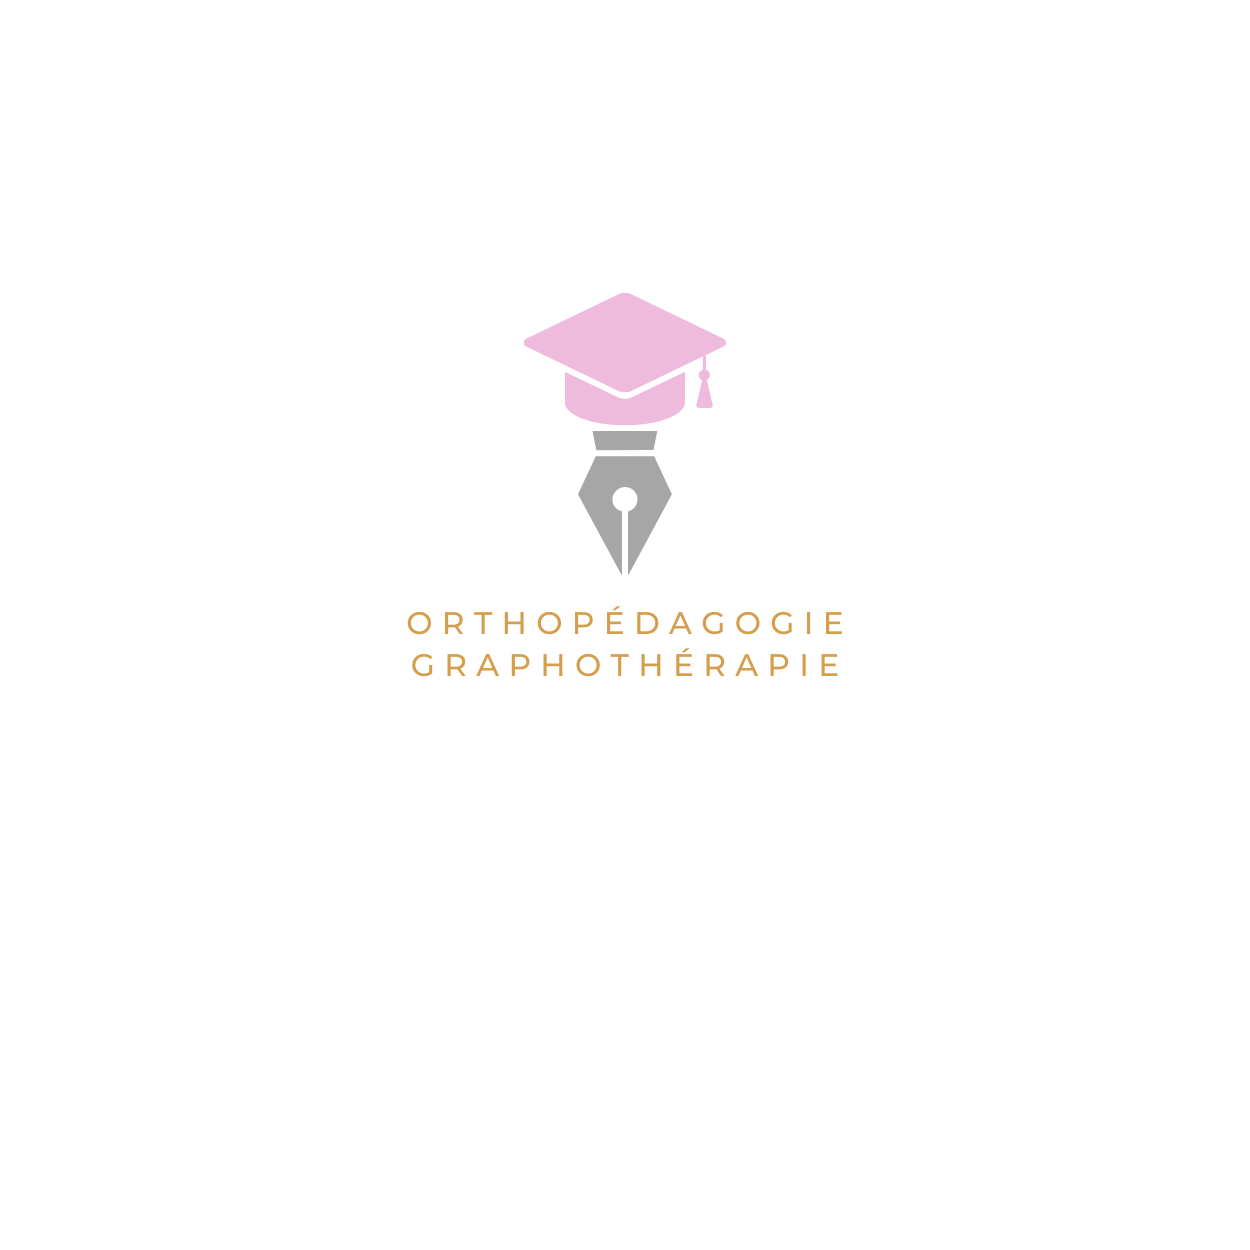 Bordeaux Orthopedagogie